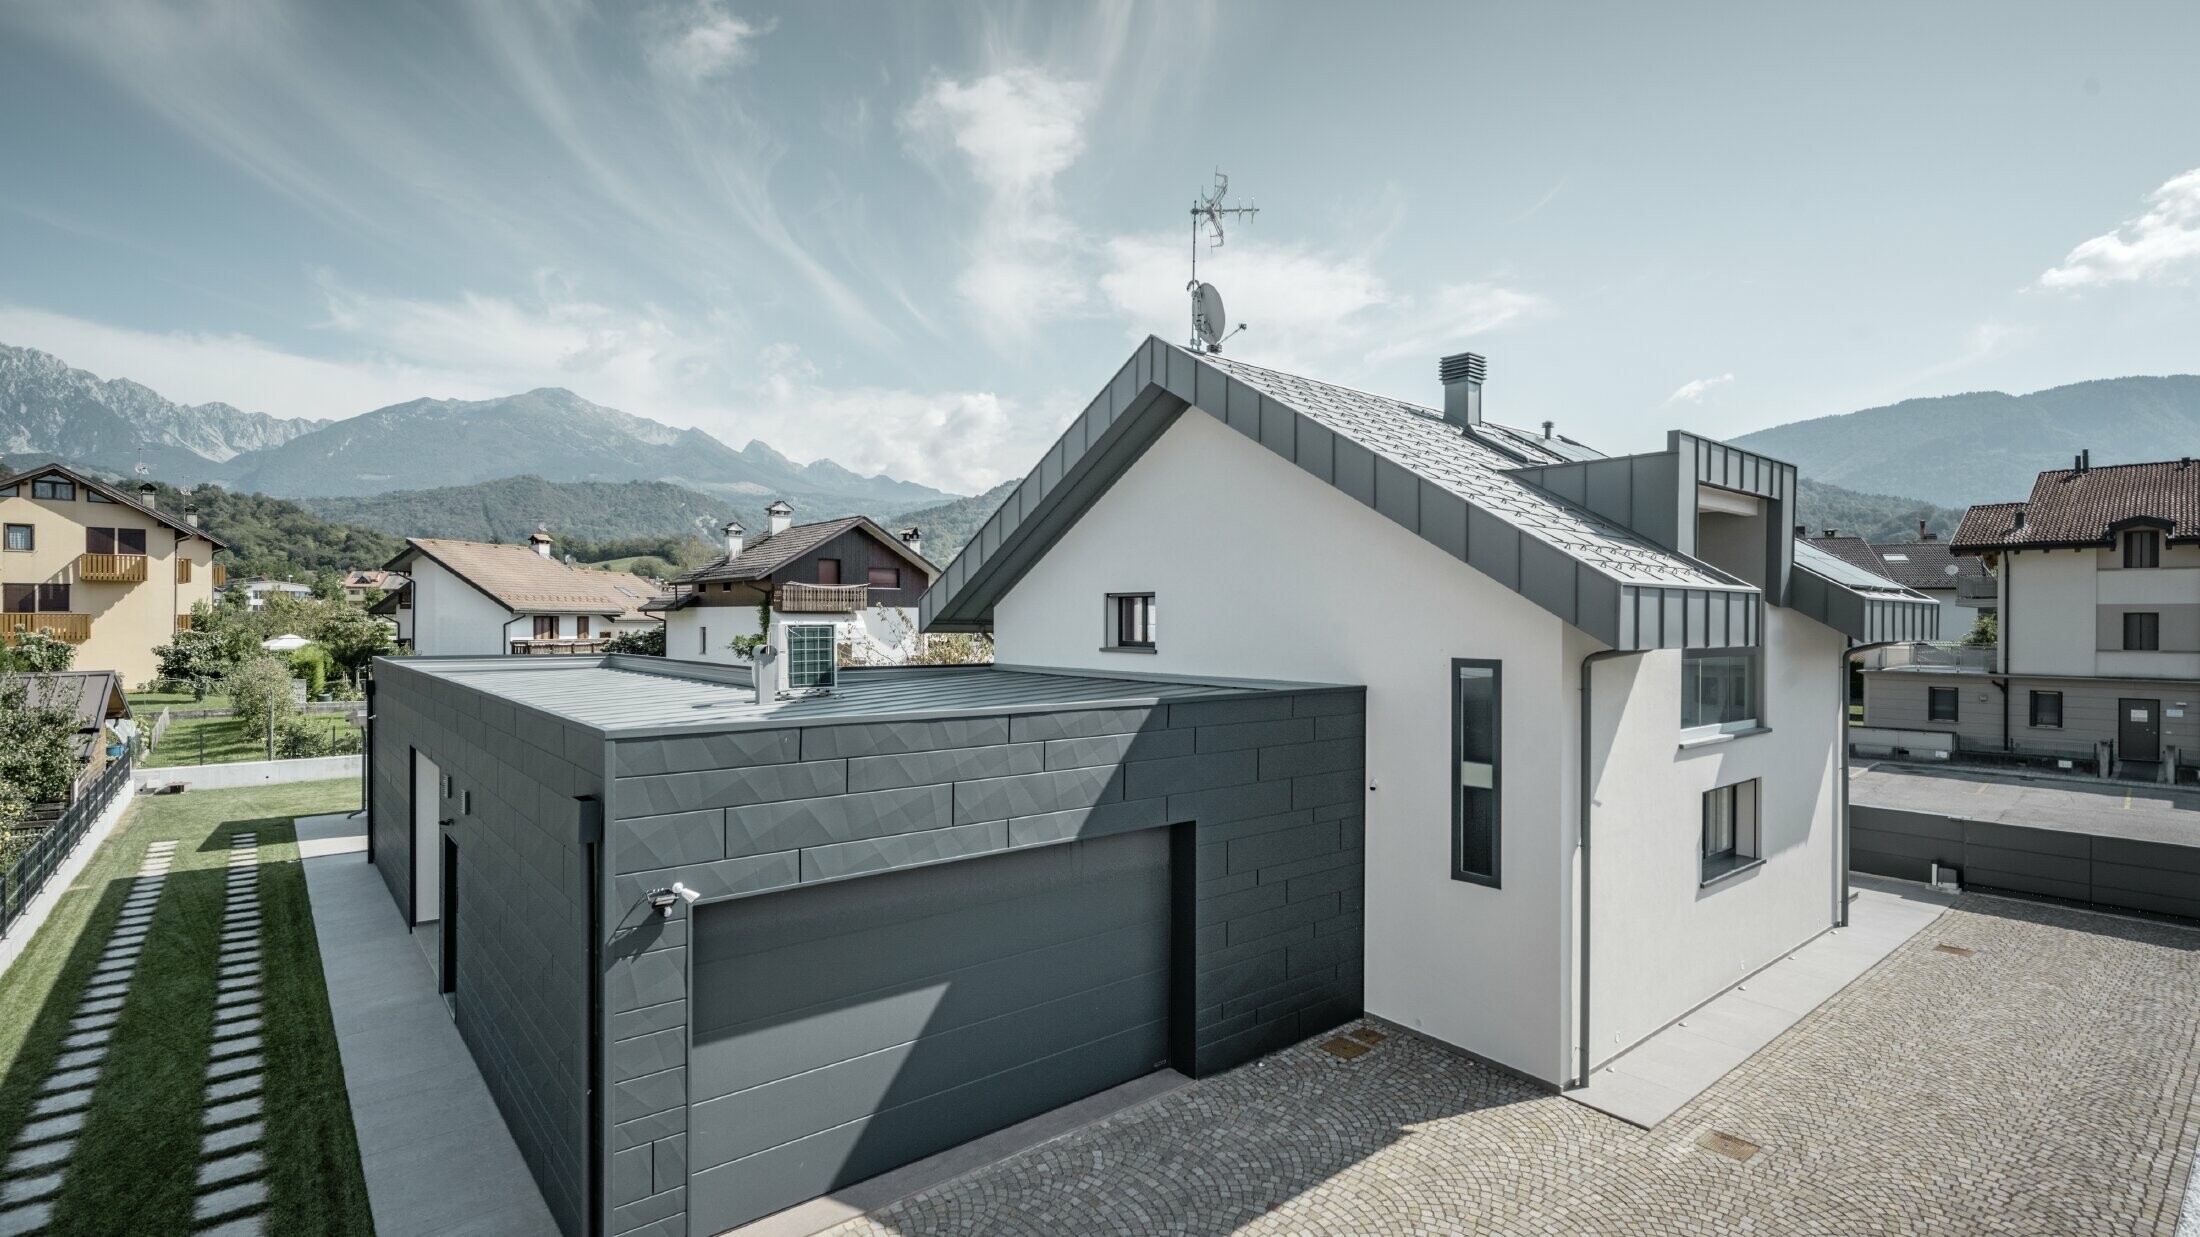 Photo de la maison individuelle, le garage est habillé de Siding.X tandis que le toit est recouvert de R.16 dans la couleur P.10 gris souris.